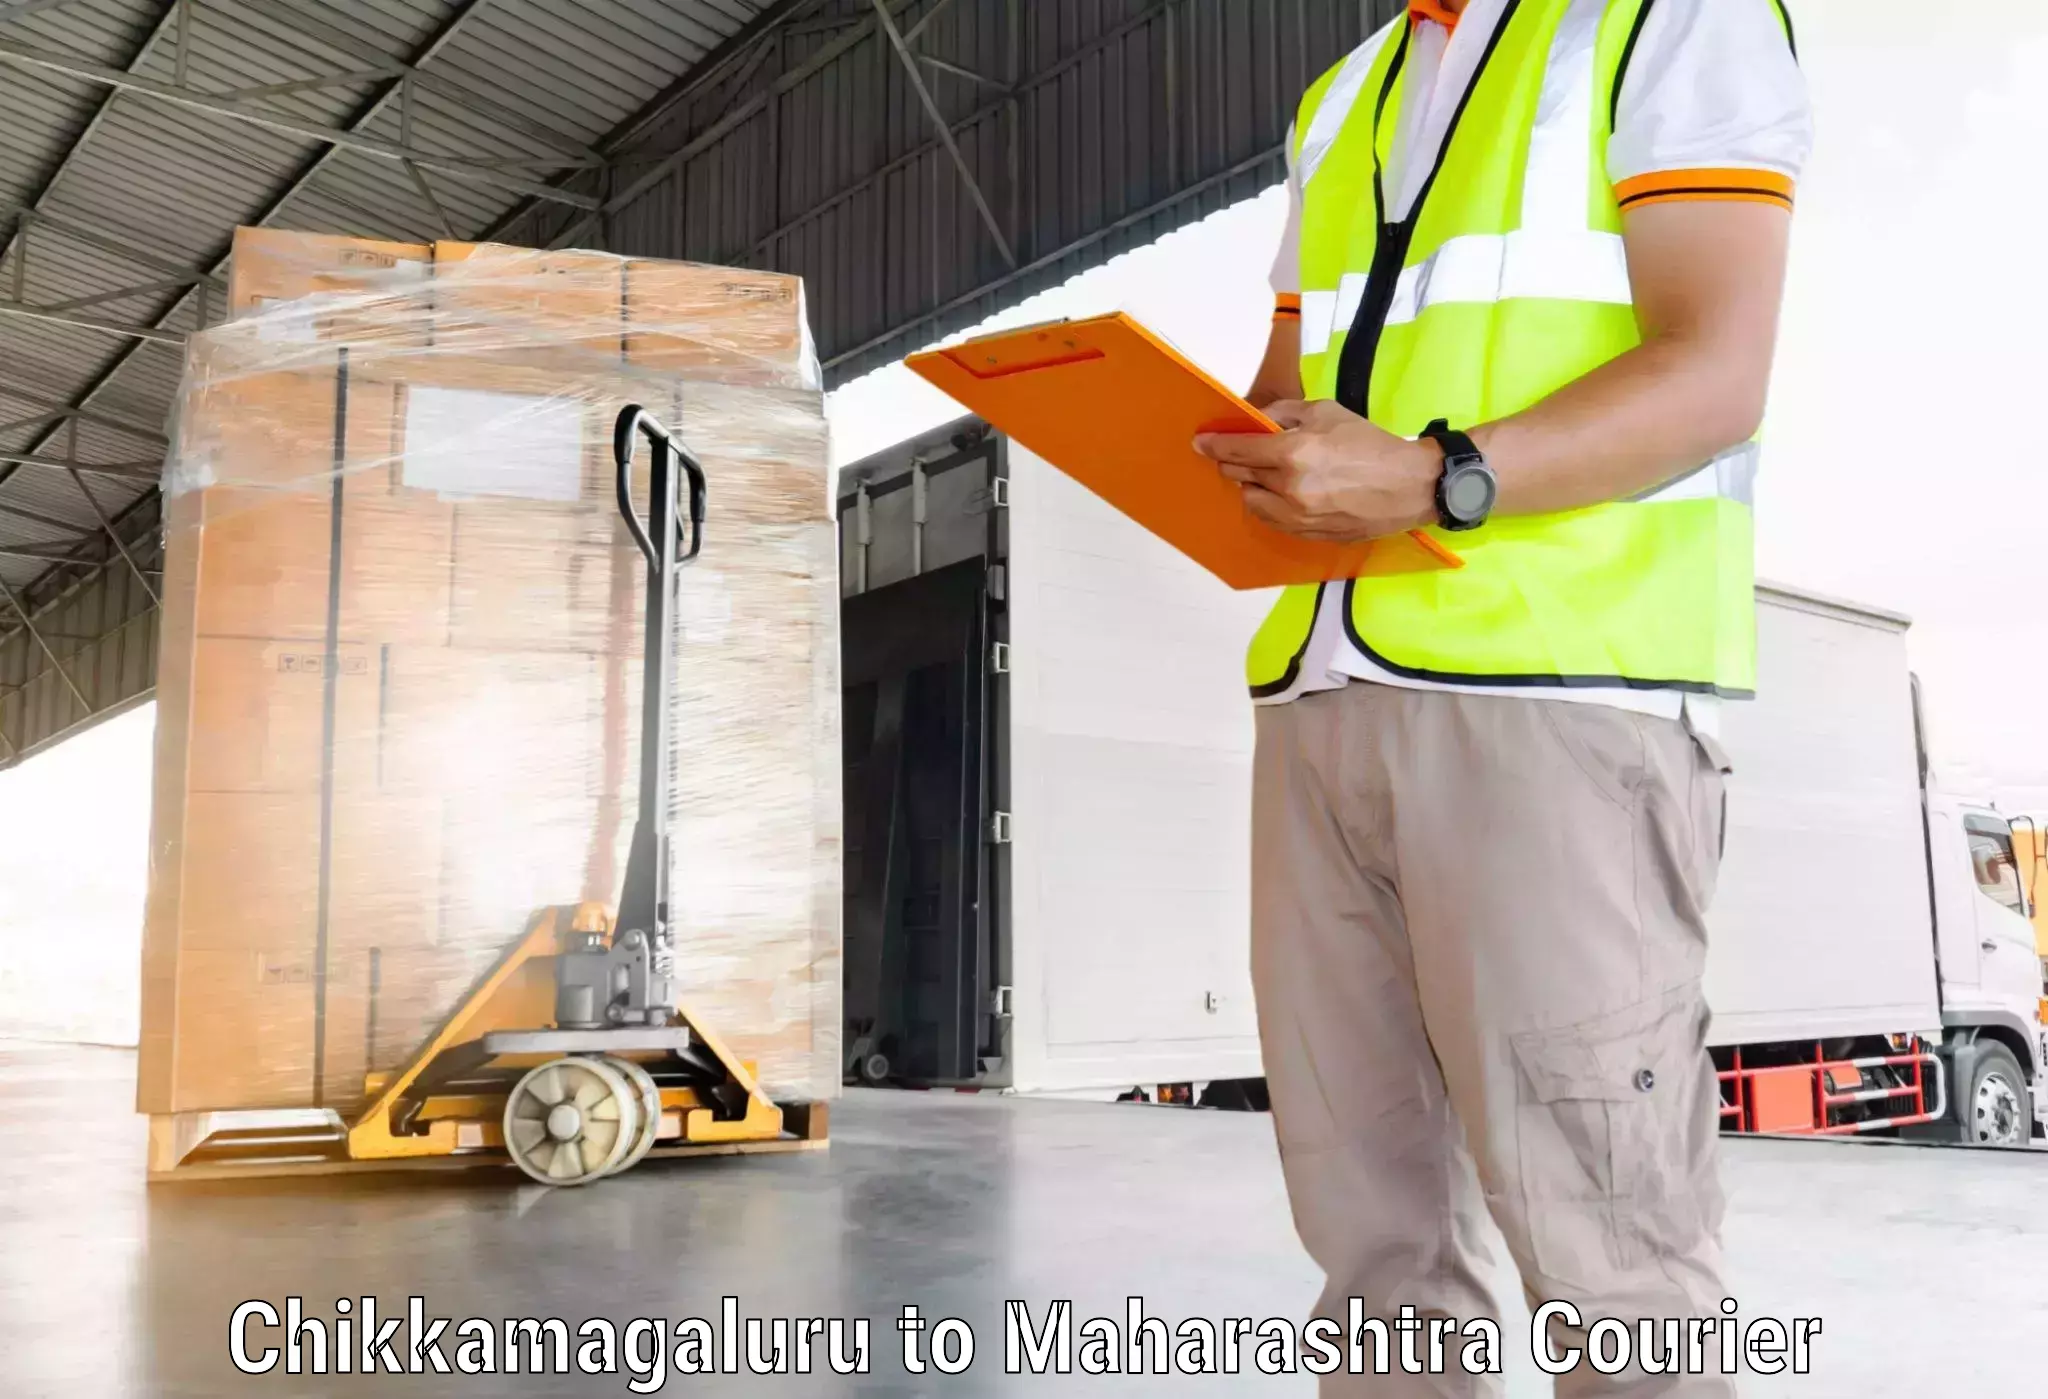 Express logistics providers Chikkamagaluru to Symbiosis International Pune